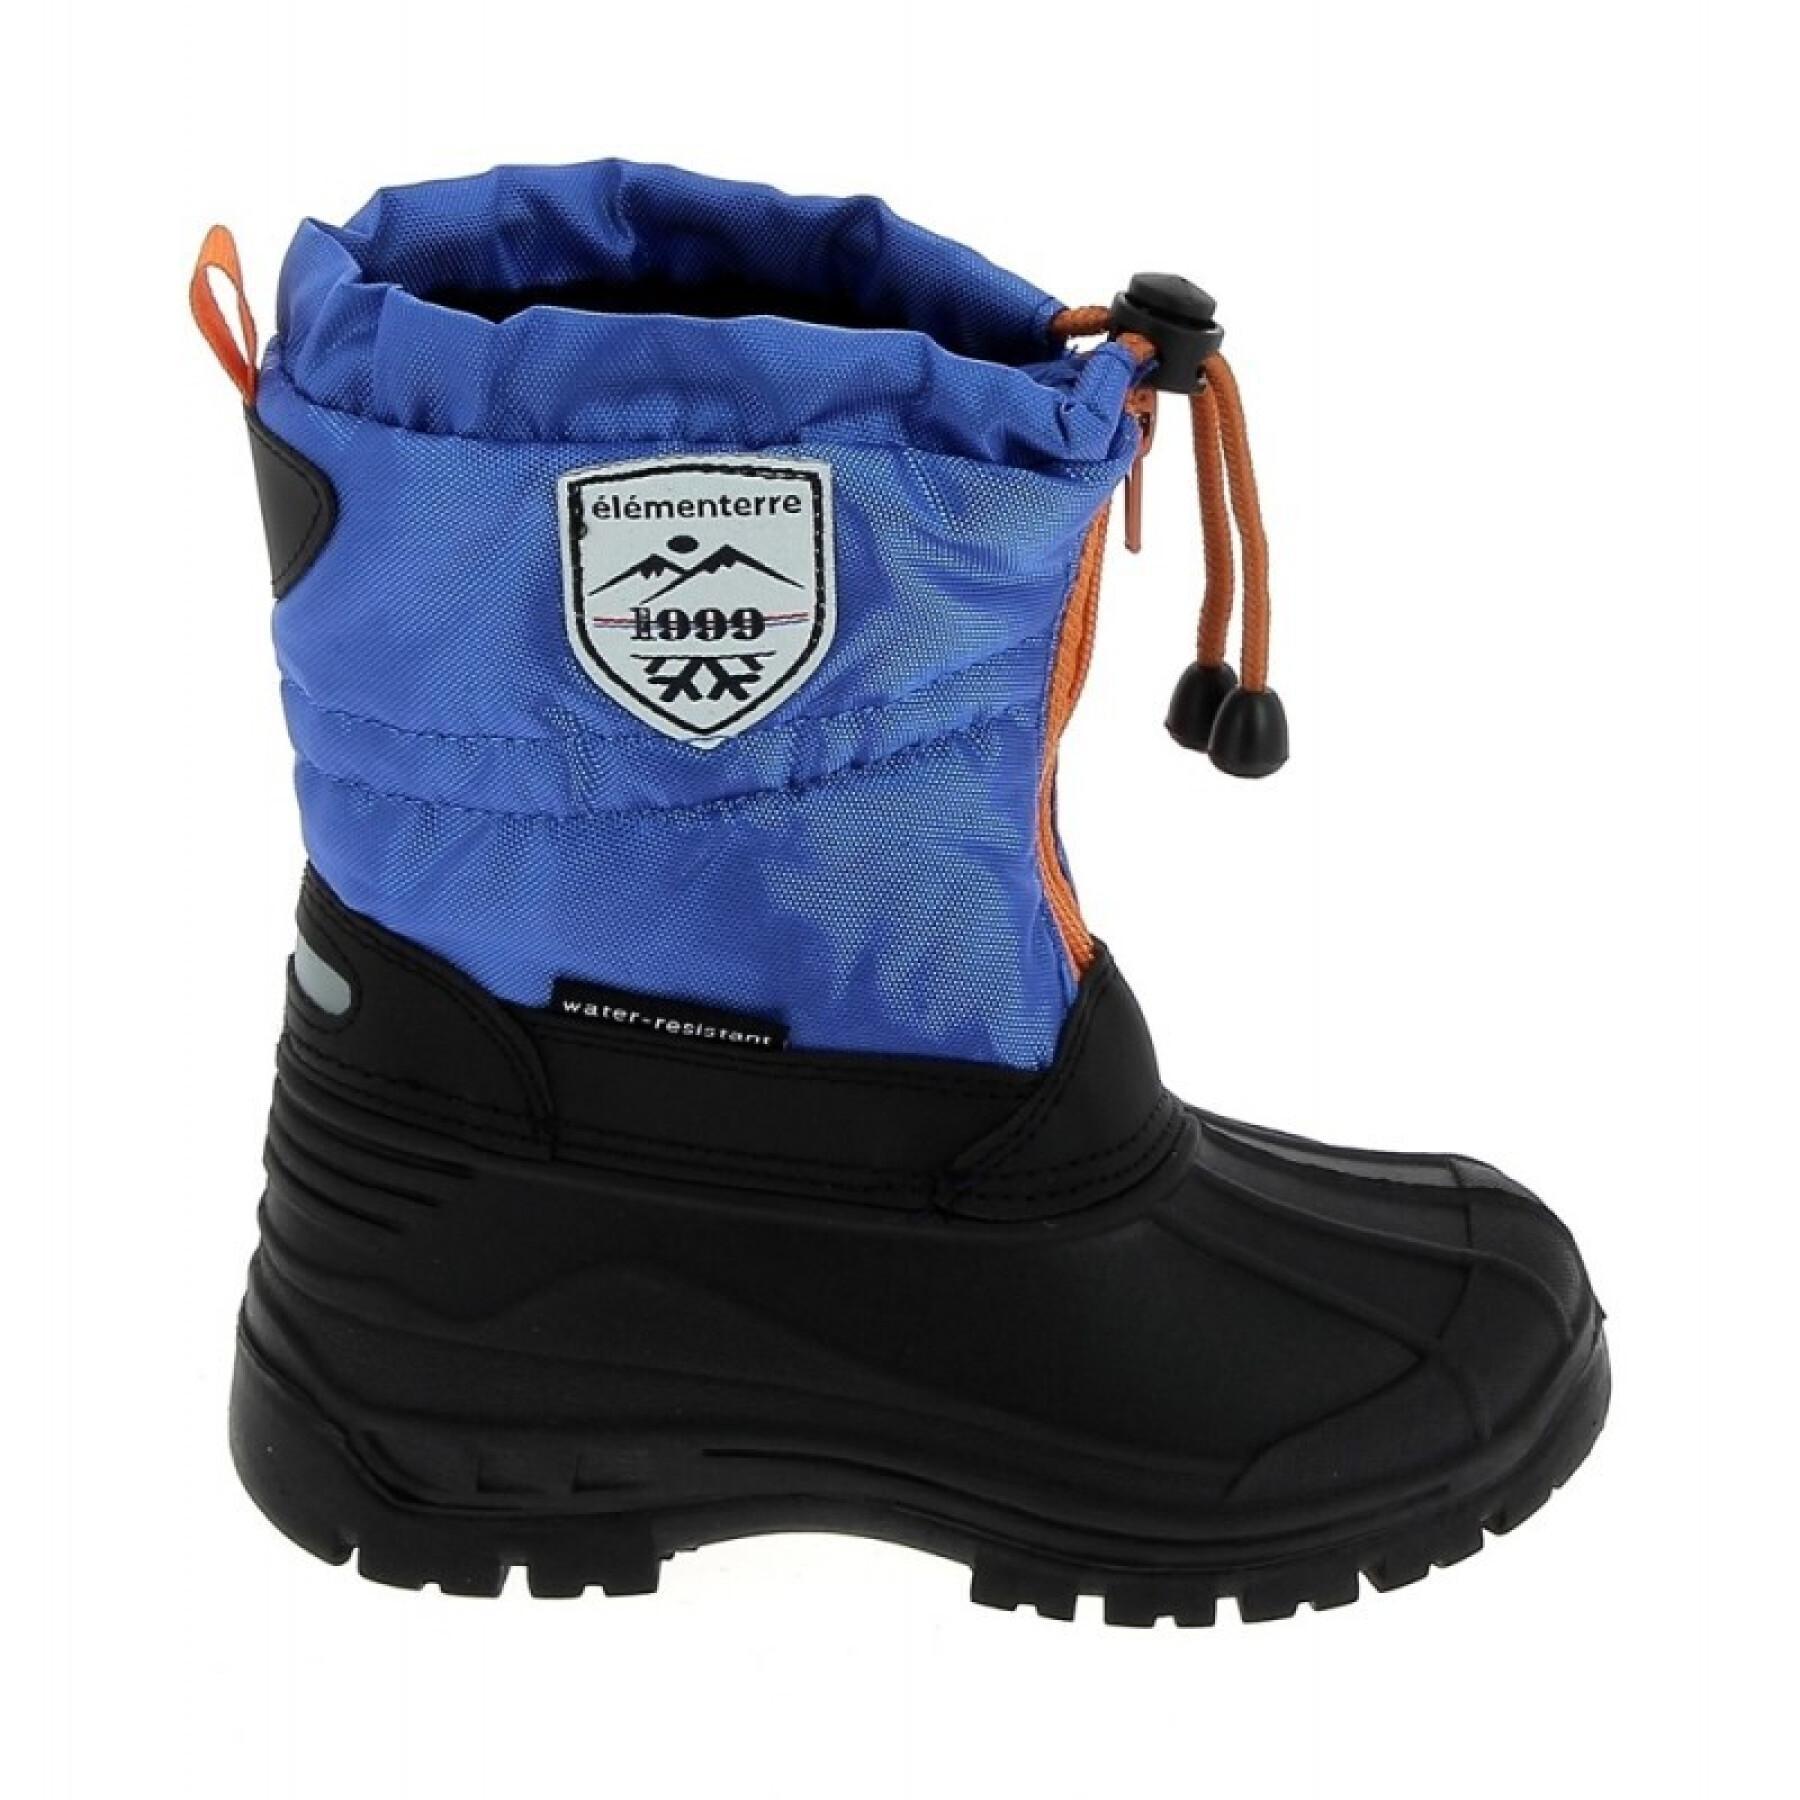 Children's après-ski boots Élémenterre Picton